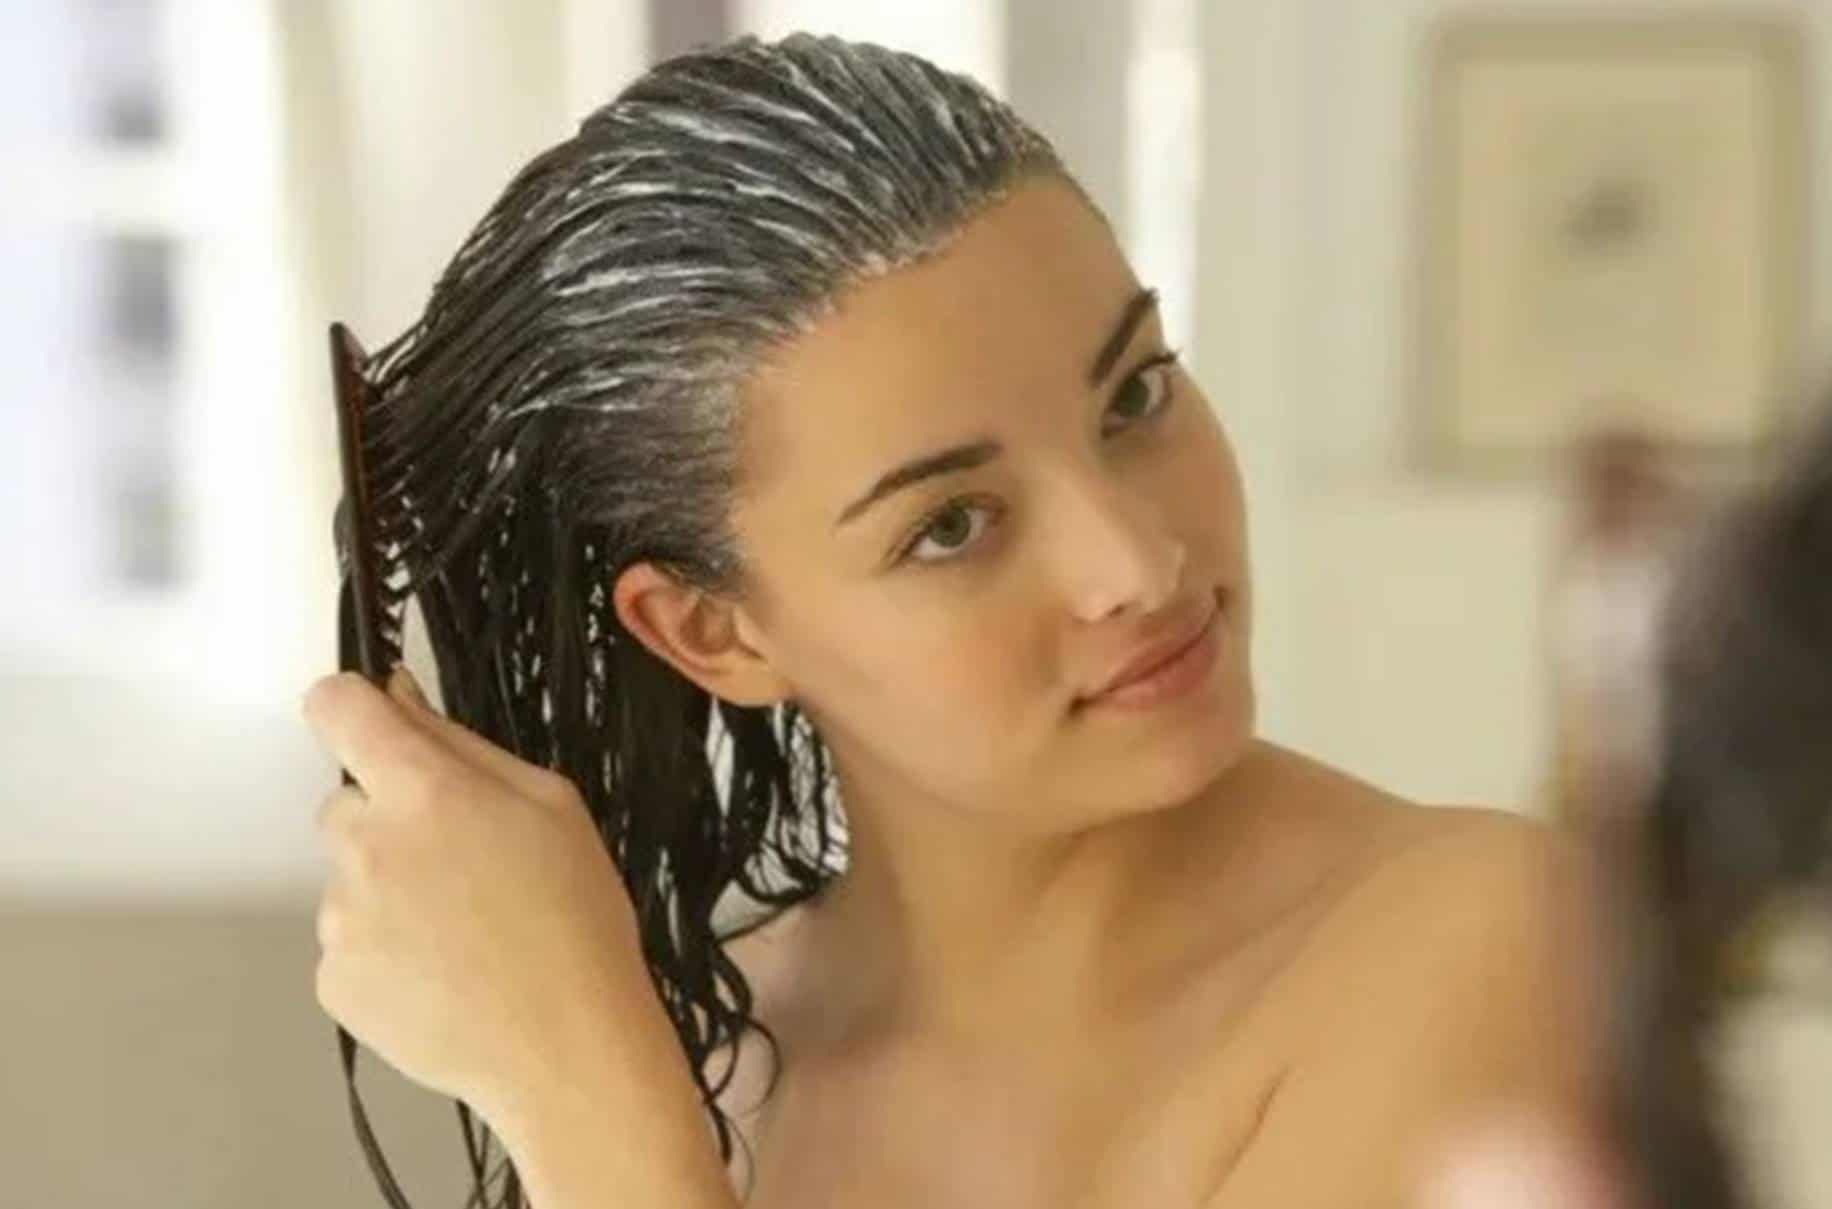 Hidratação poderosa para engrossar o cabelo com apenas 1 ingrediente